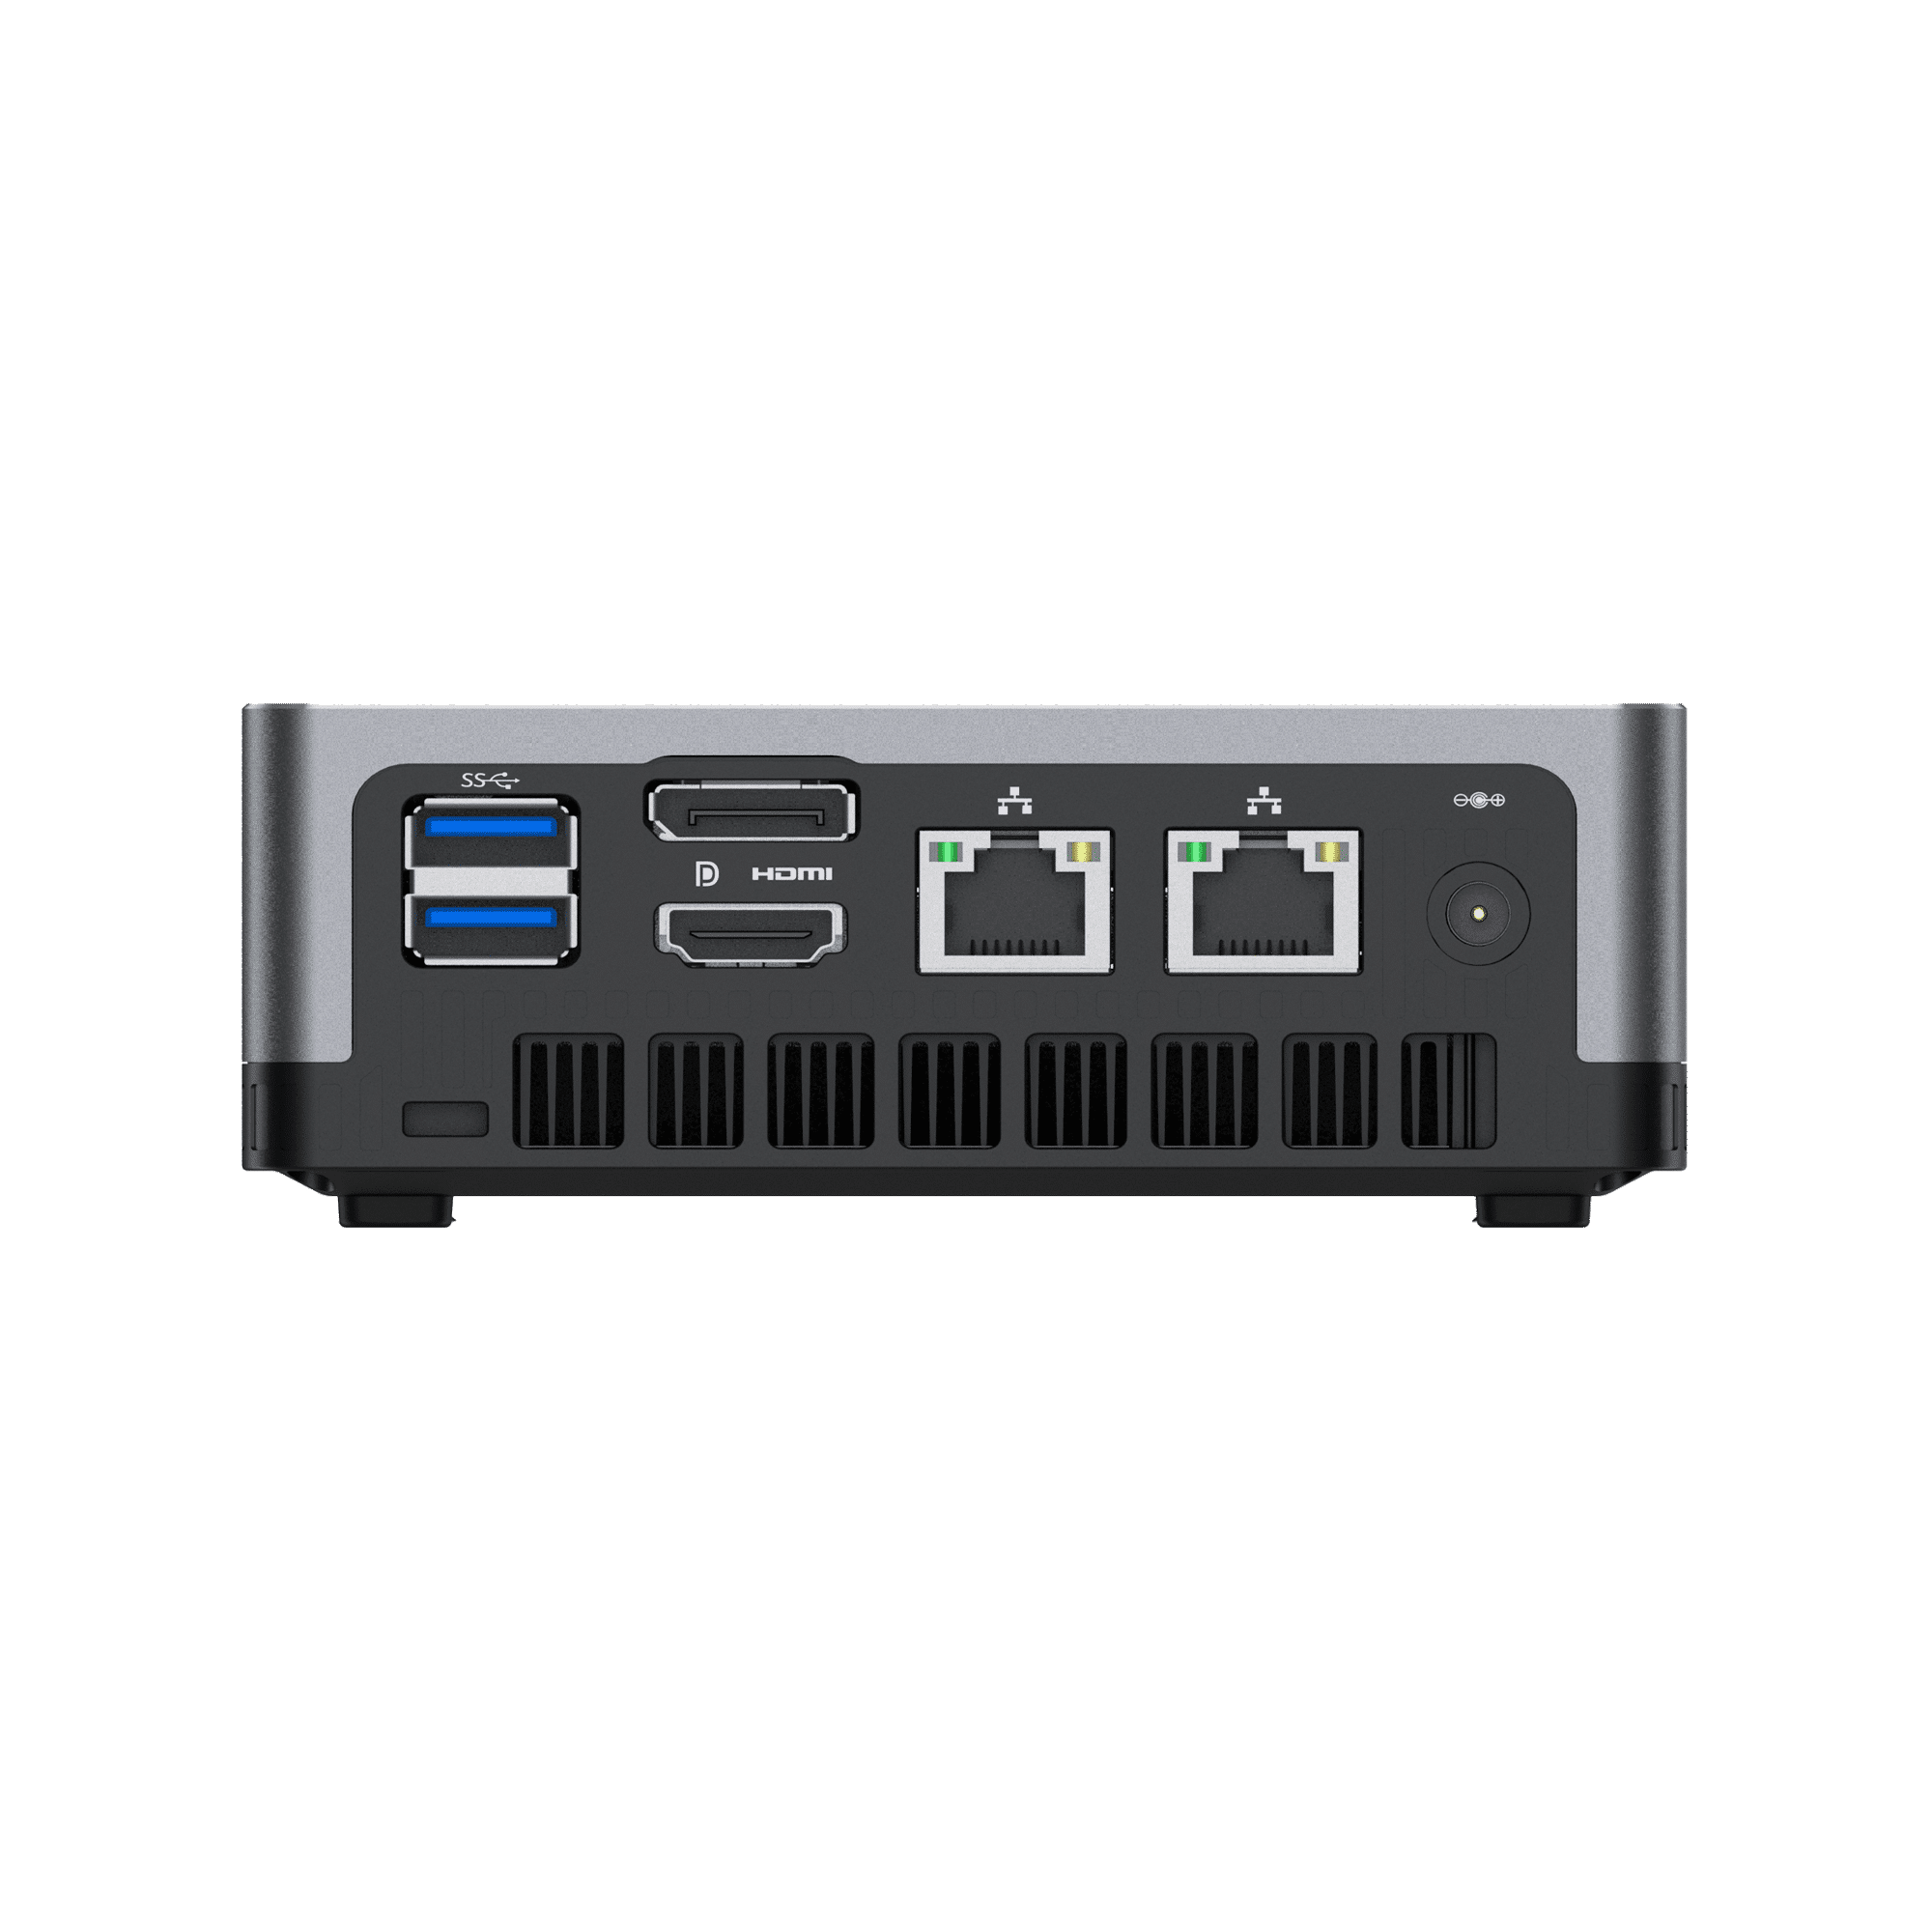 MinisForum EliteMini UM700 - Présentation des entrées/sorties arrière : 2x USB Type-A 3.0, 1x HDMI, 1x DisplayPort, 2x ports Ethernet RJ45 et port d'alimentation.